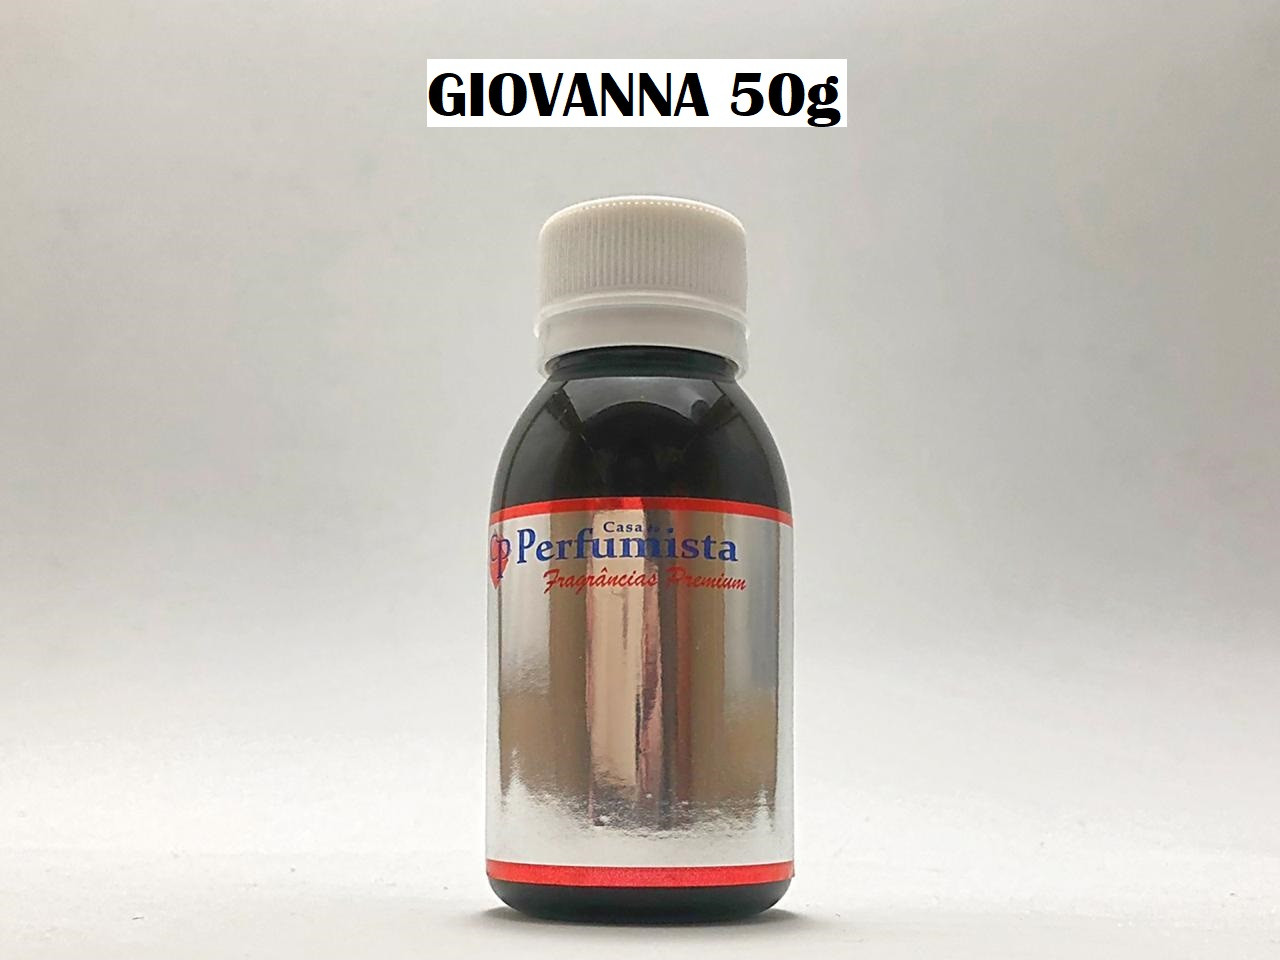 GIOVANNA 50g - Inspiração: Giovanna Baby 